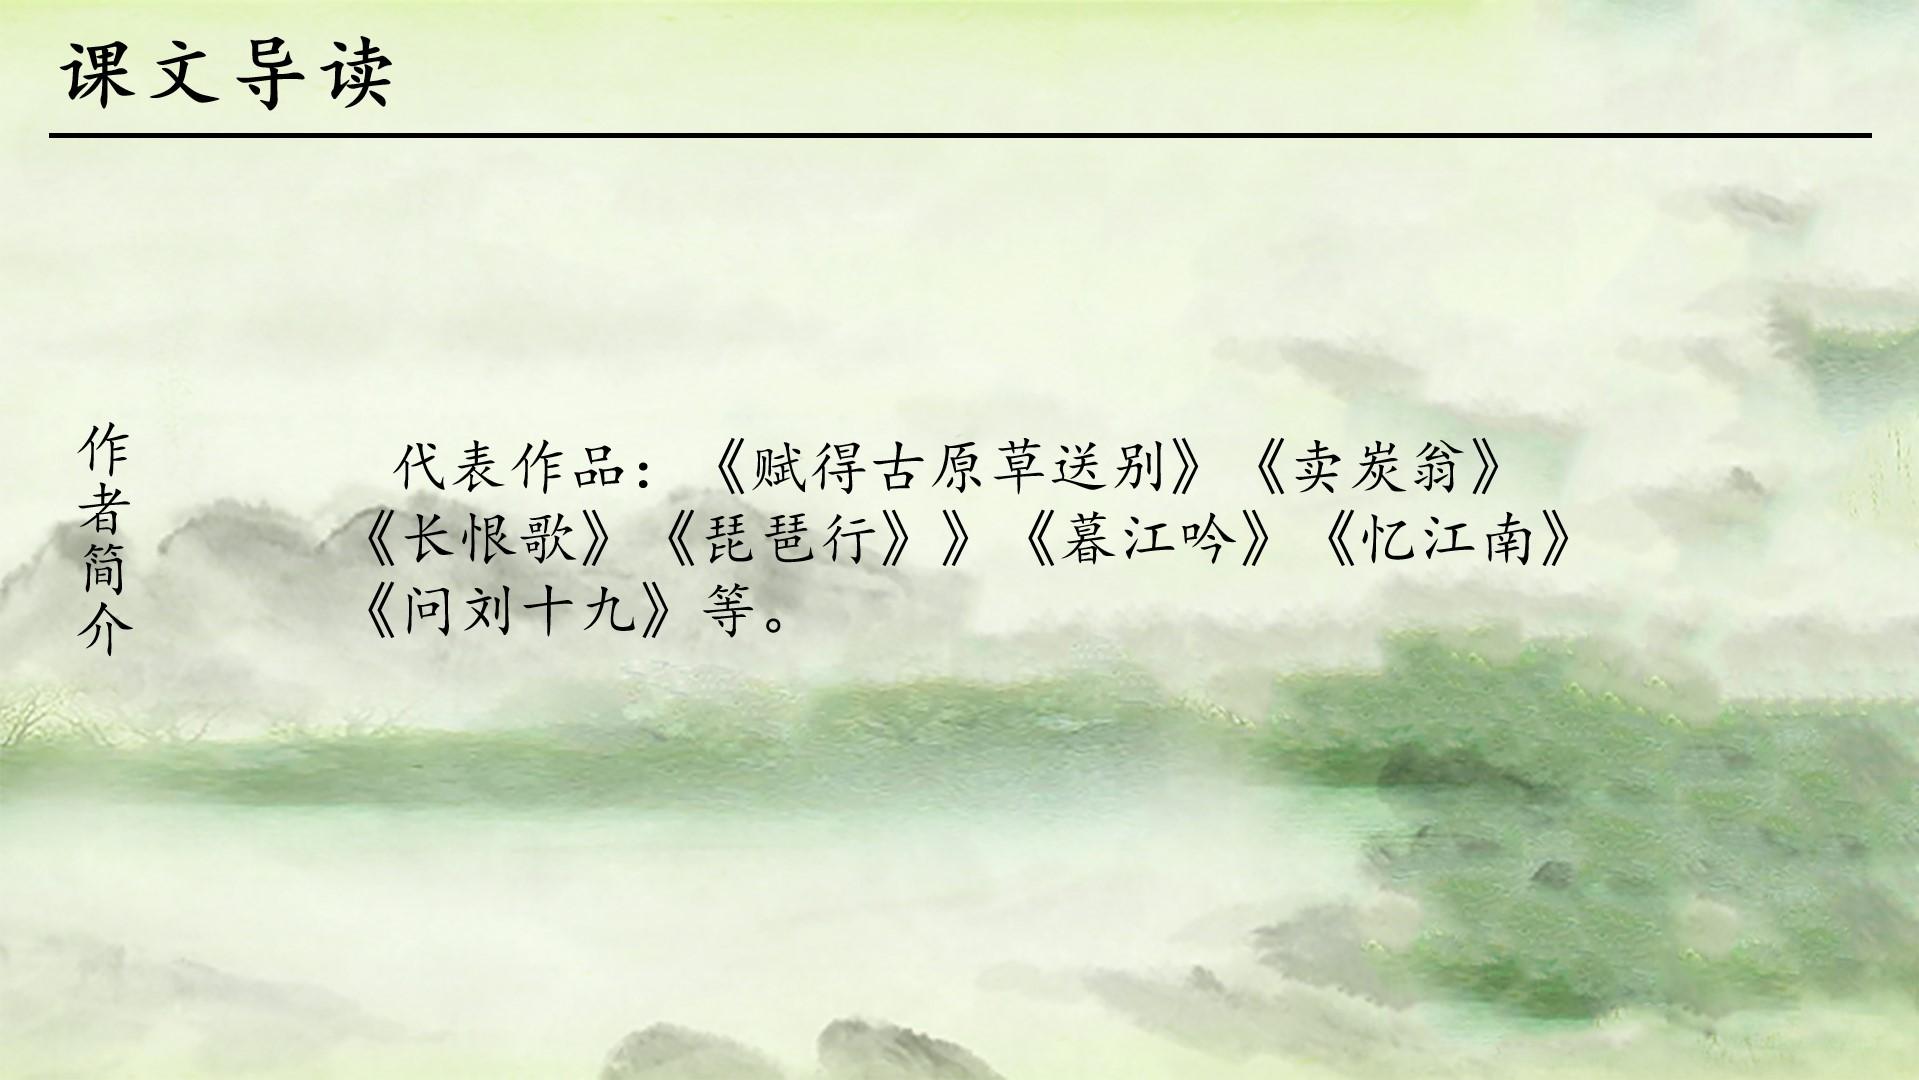 教育教学绿色黑色白色中国风琵琶行长恨歌作品卖炭翁代表云素材PPT模板1672564769999